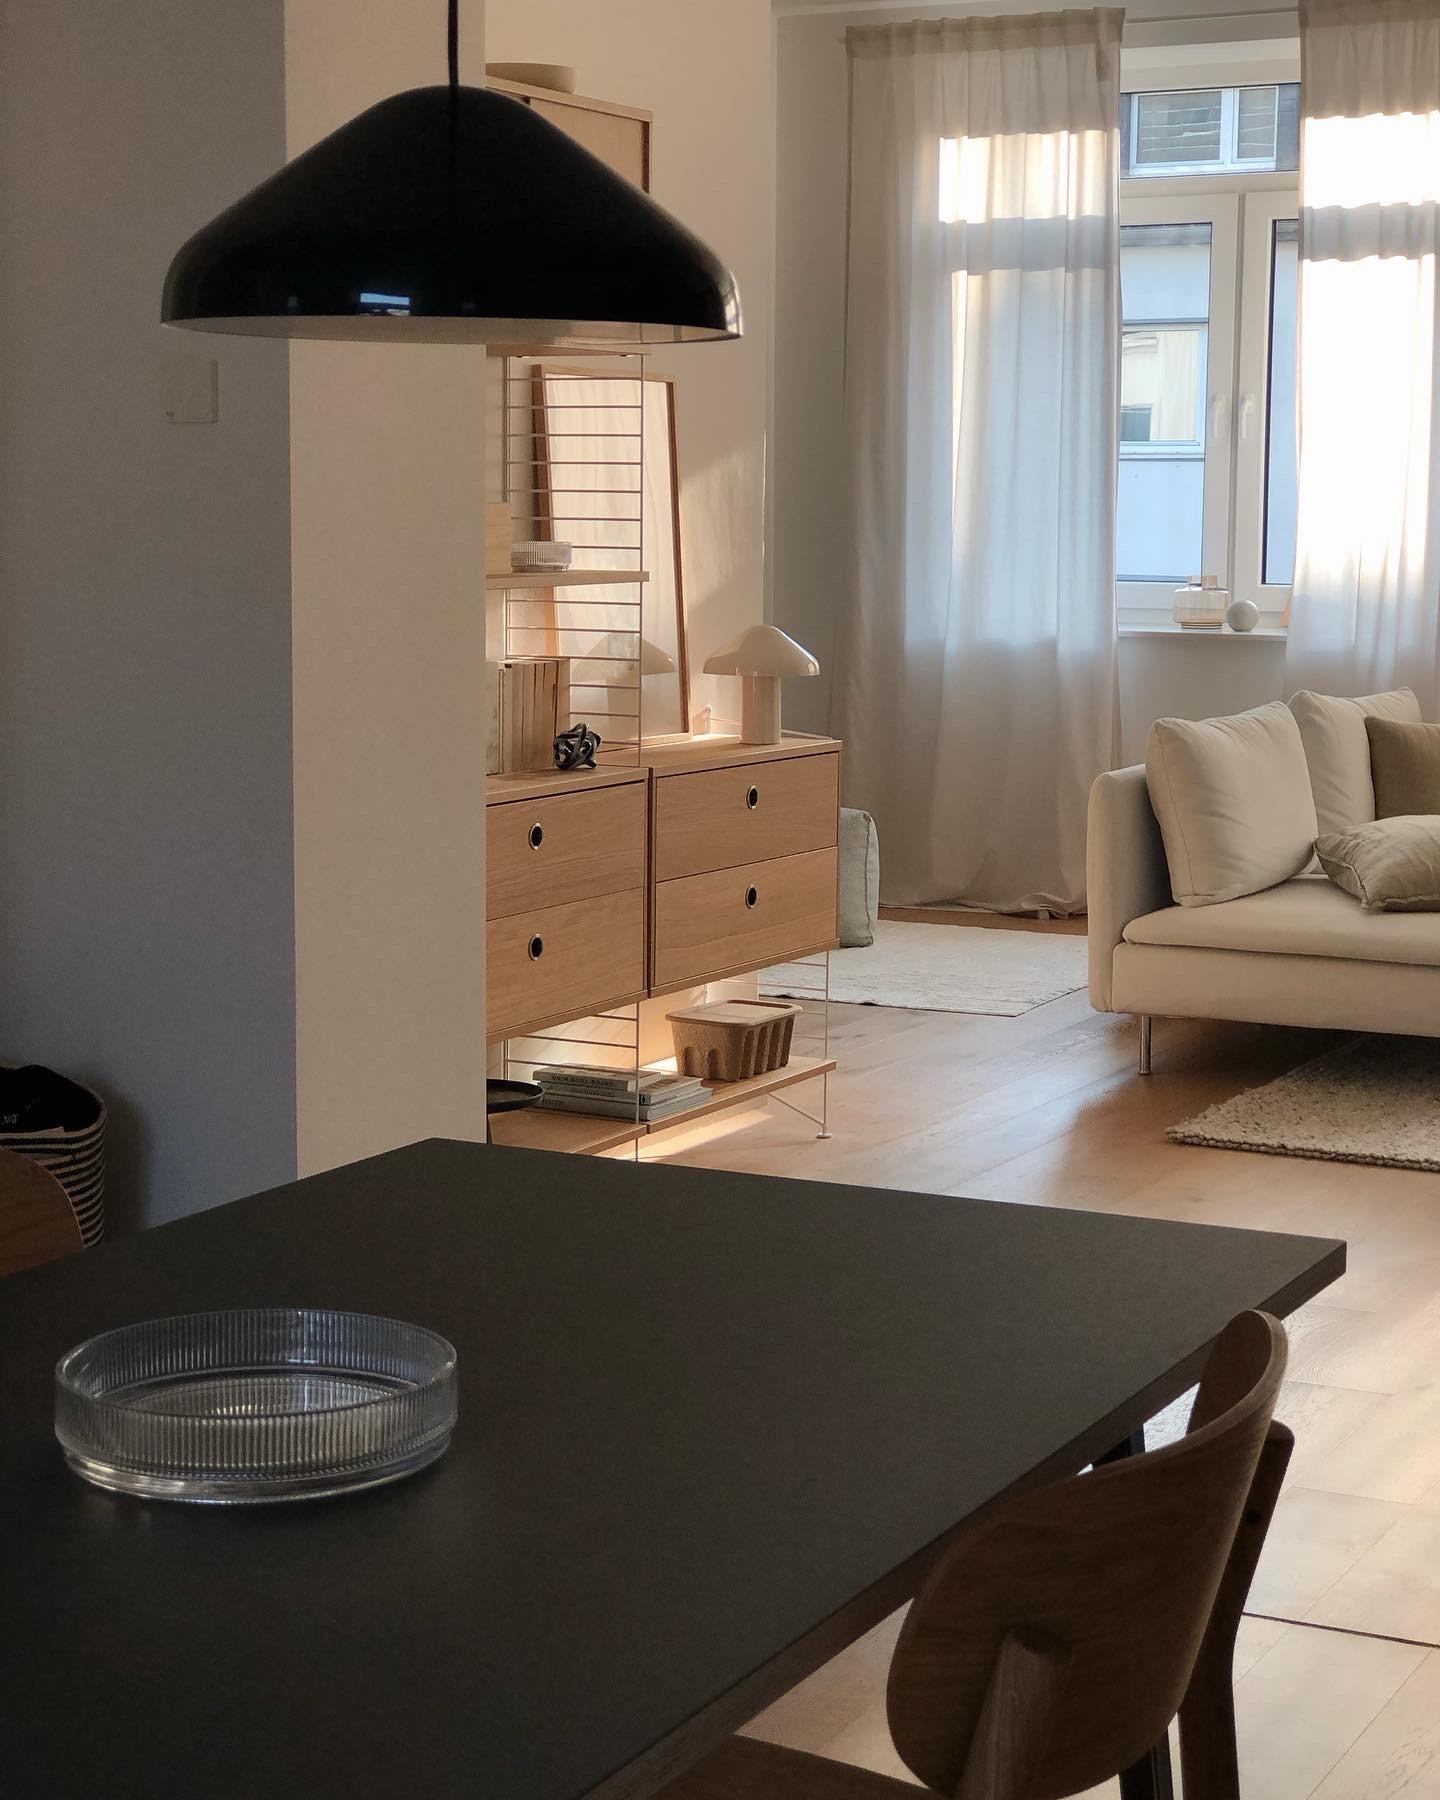 #wohnzimmer #livingroom #küche #kitchen #minimalistisch #skandinavisch #home #interior #stringregal #regal #couchstyle